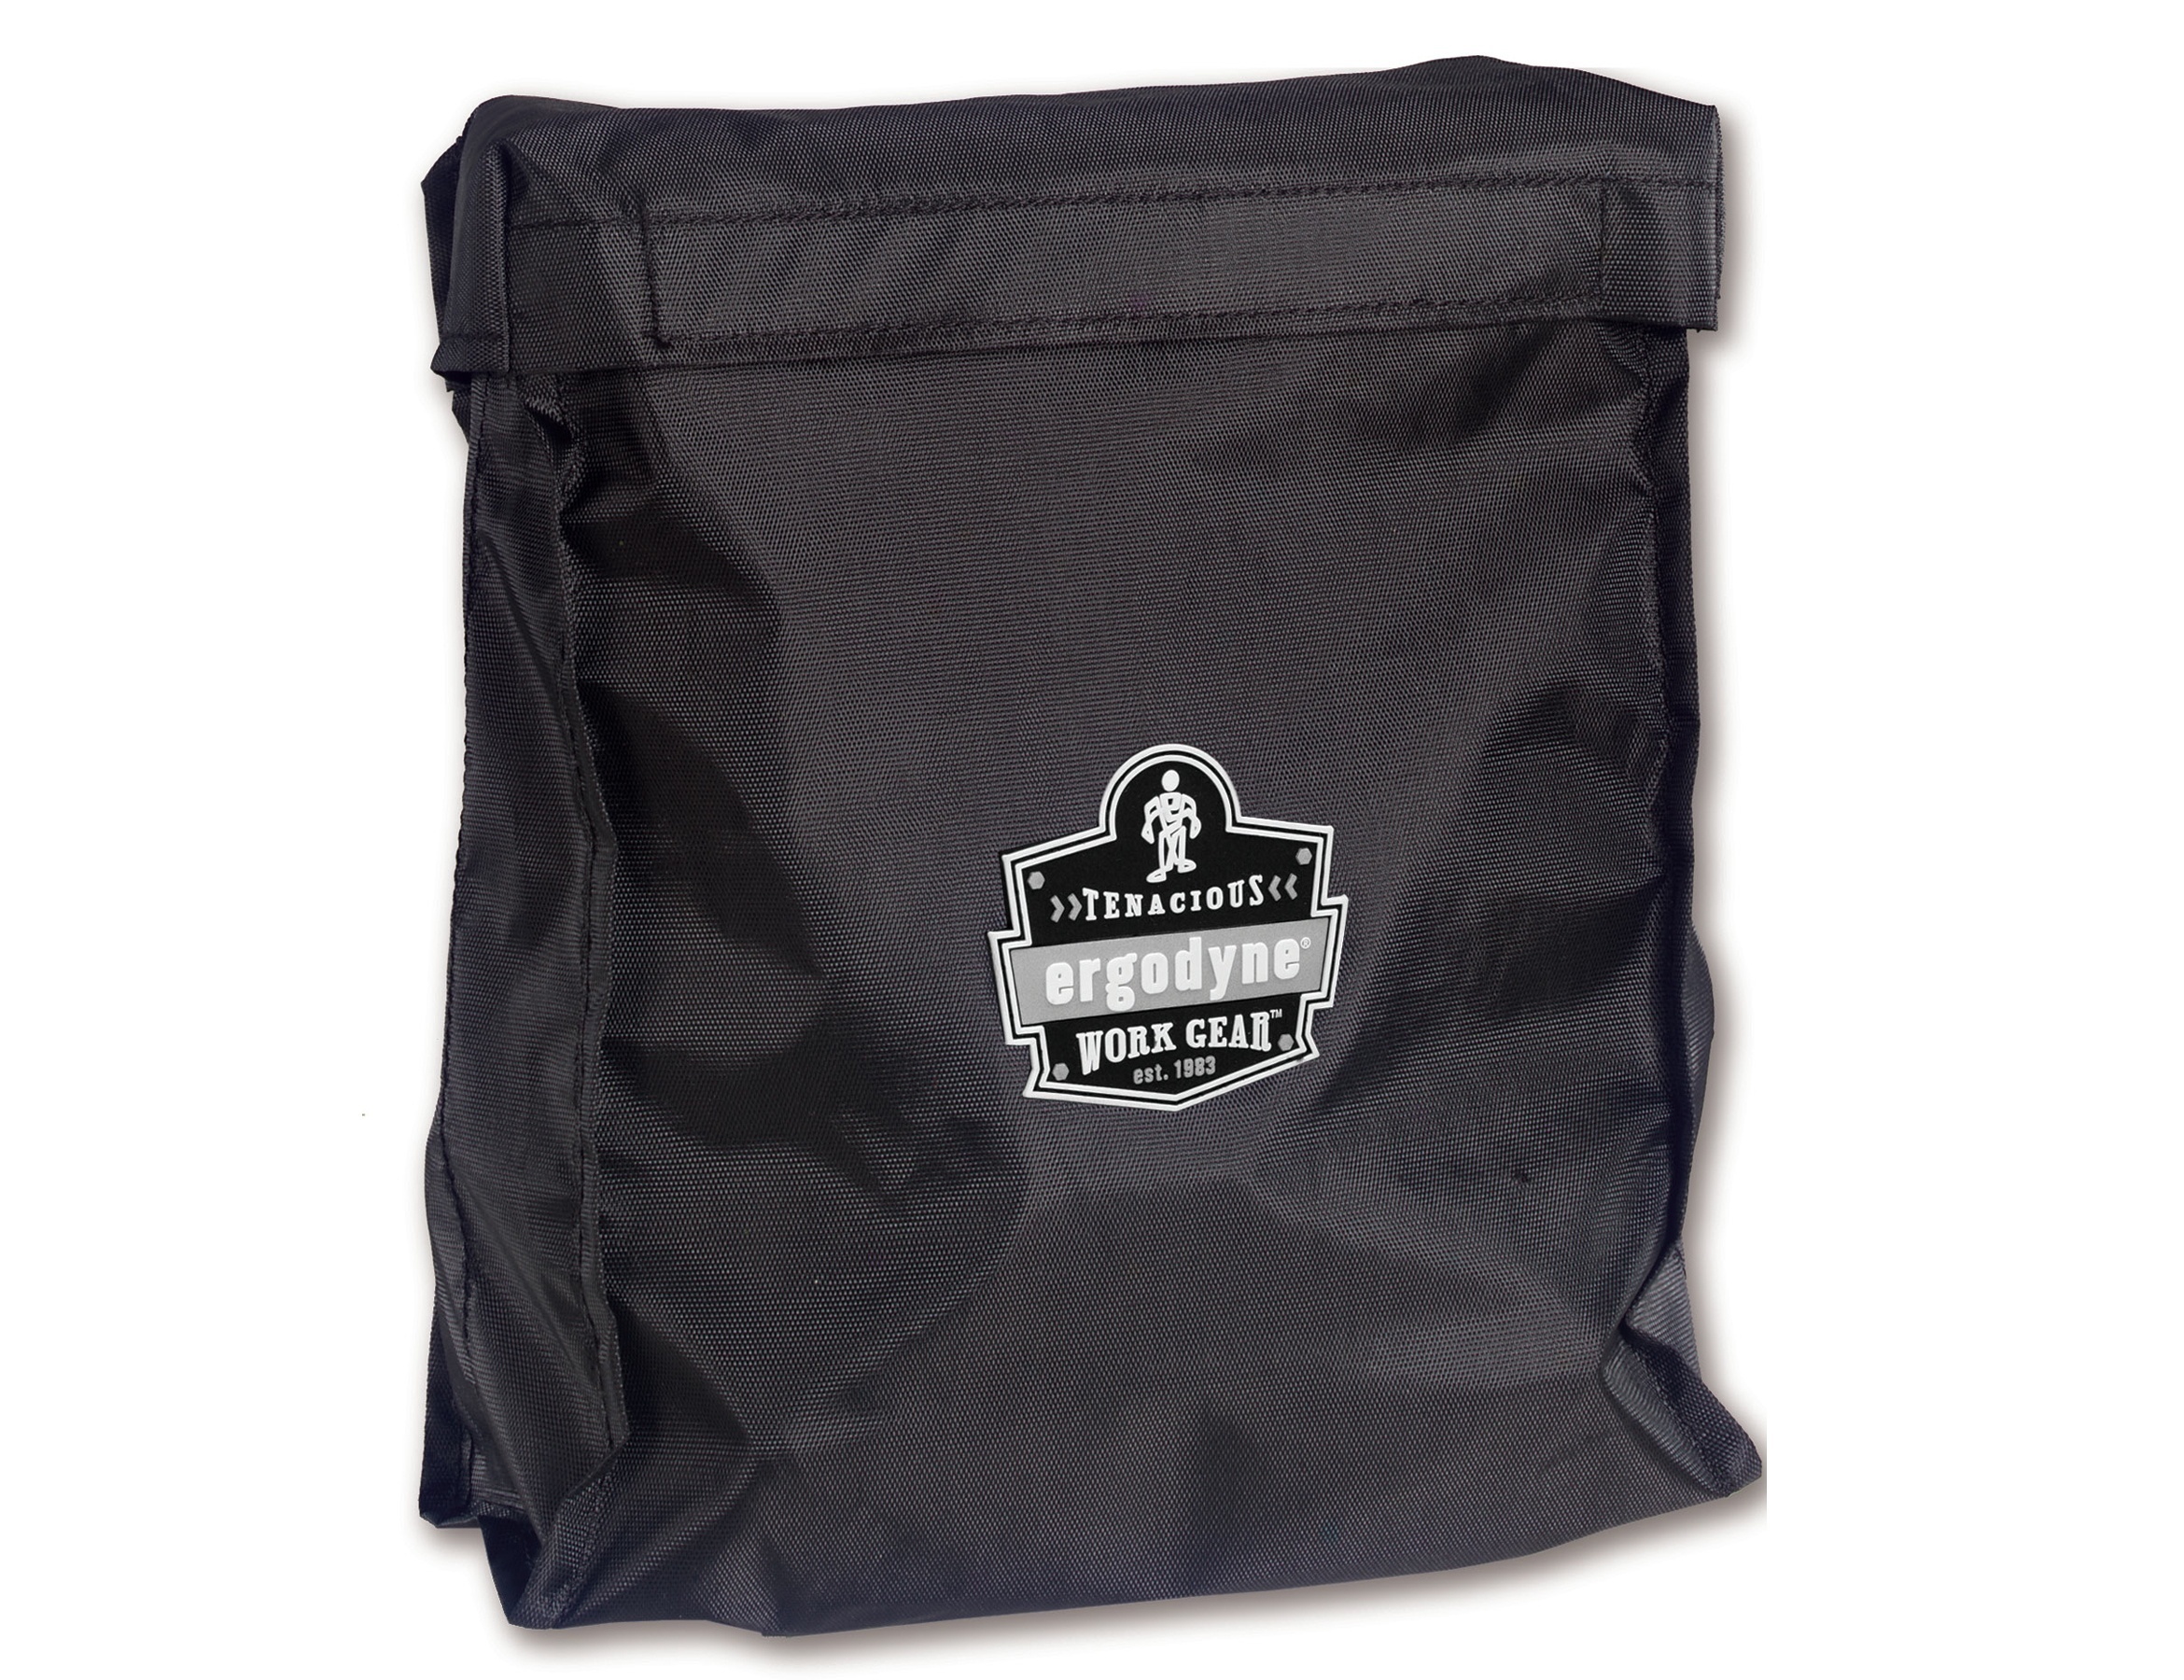 Ergodyne Arsenal Respirator Bag - Full Face from GME Supply